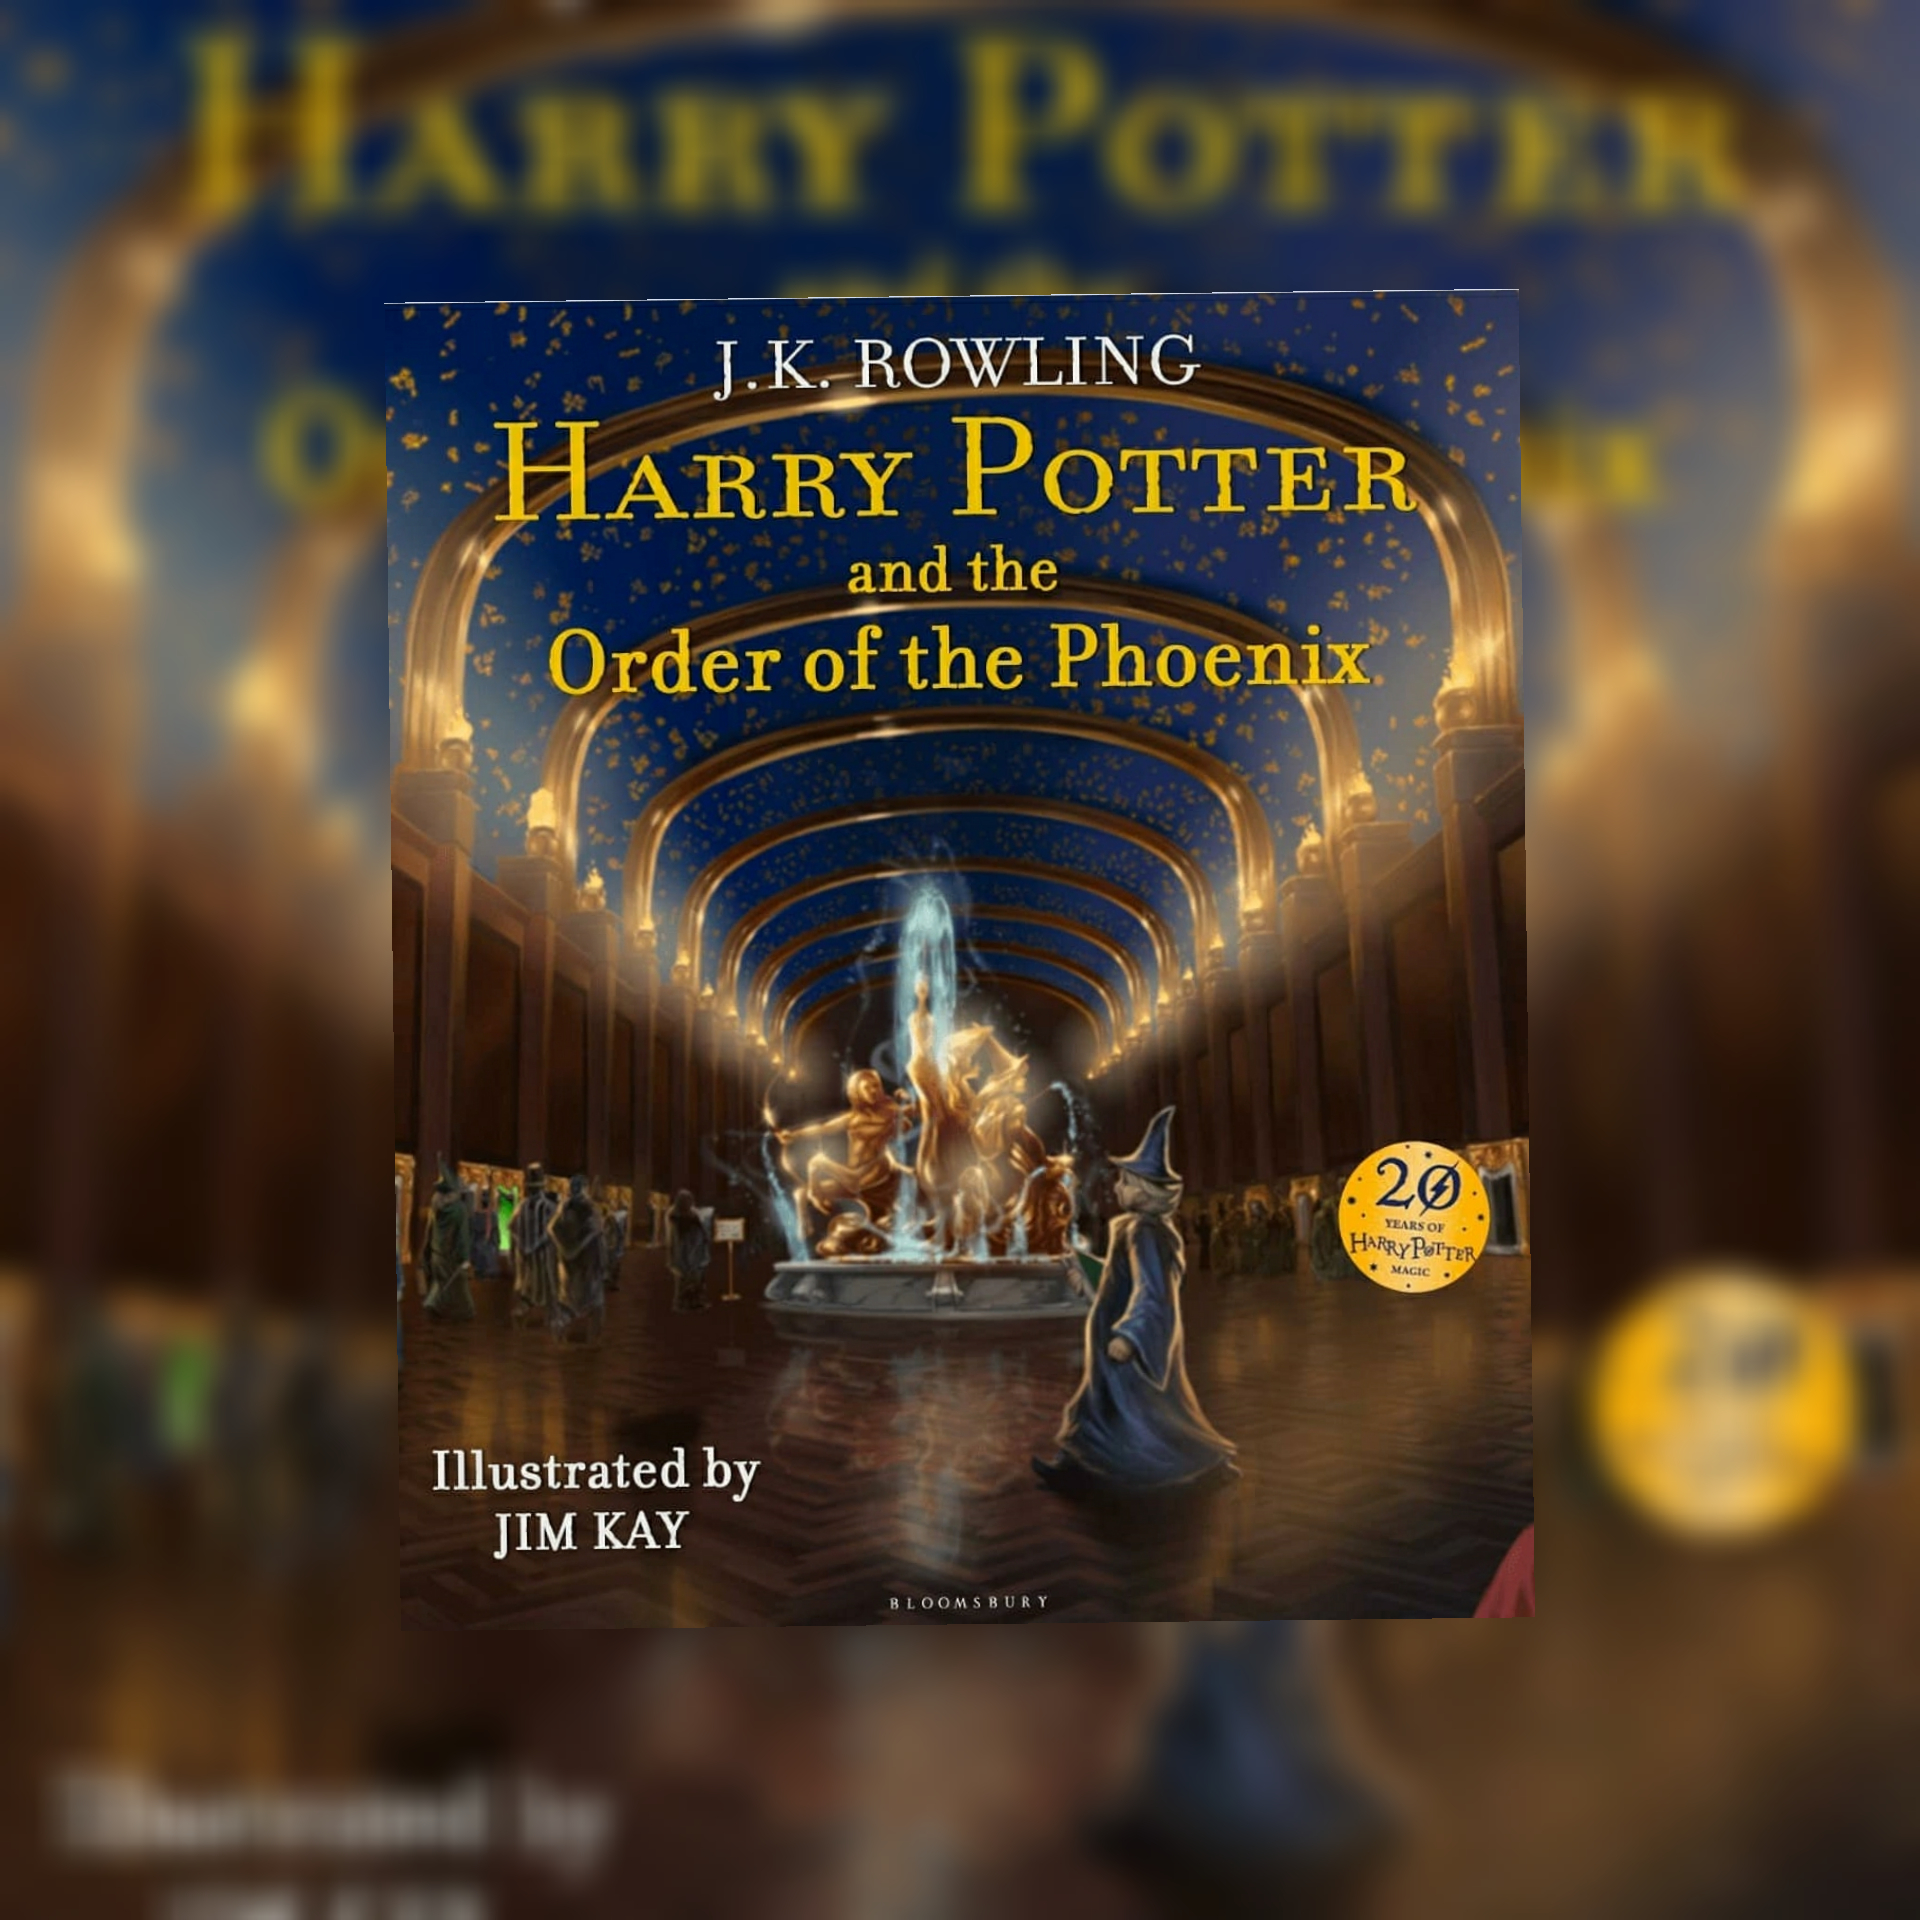 HARRY POTTER A L'ÉCOLE DES SORCIERS, J.K Rowling & Jim Kay